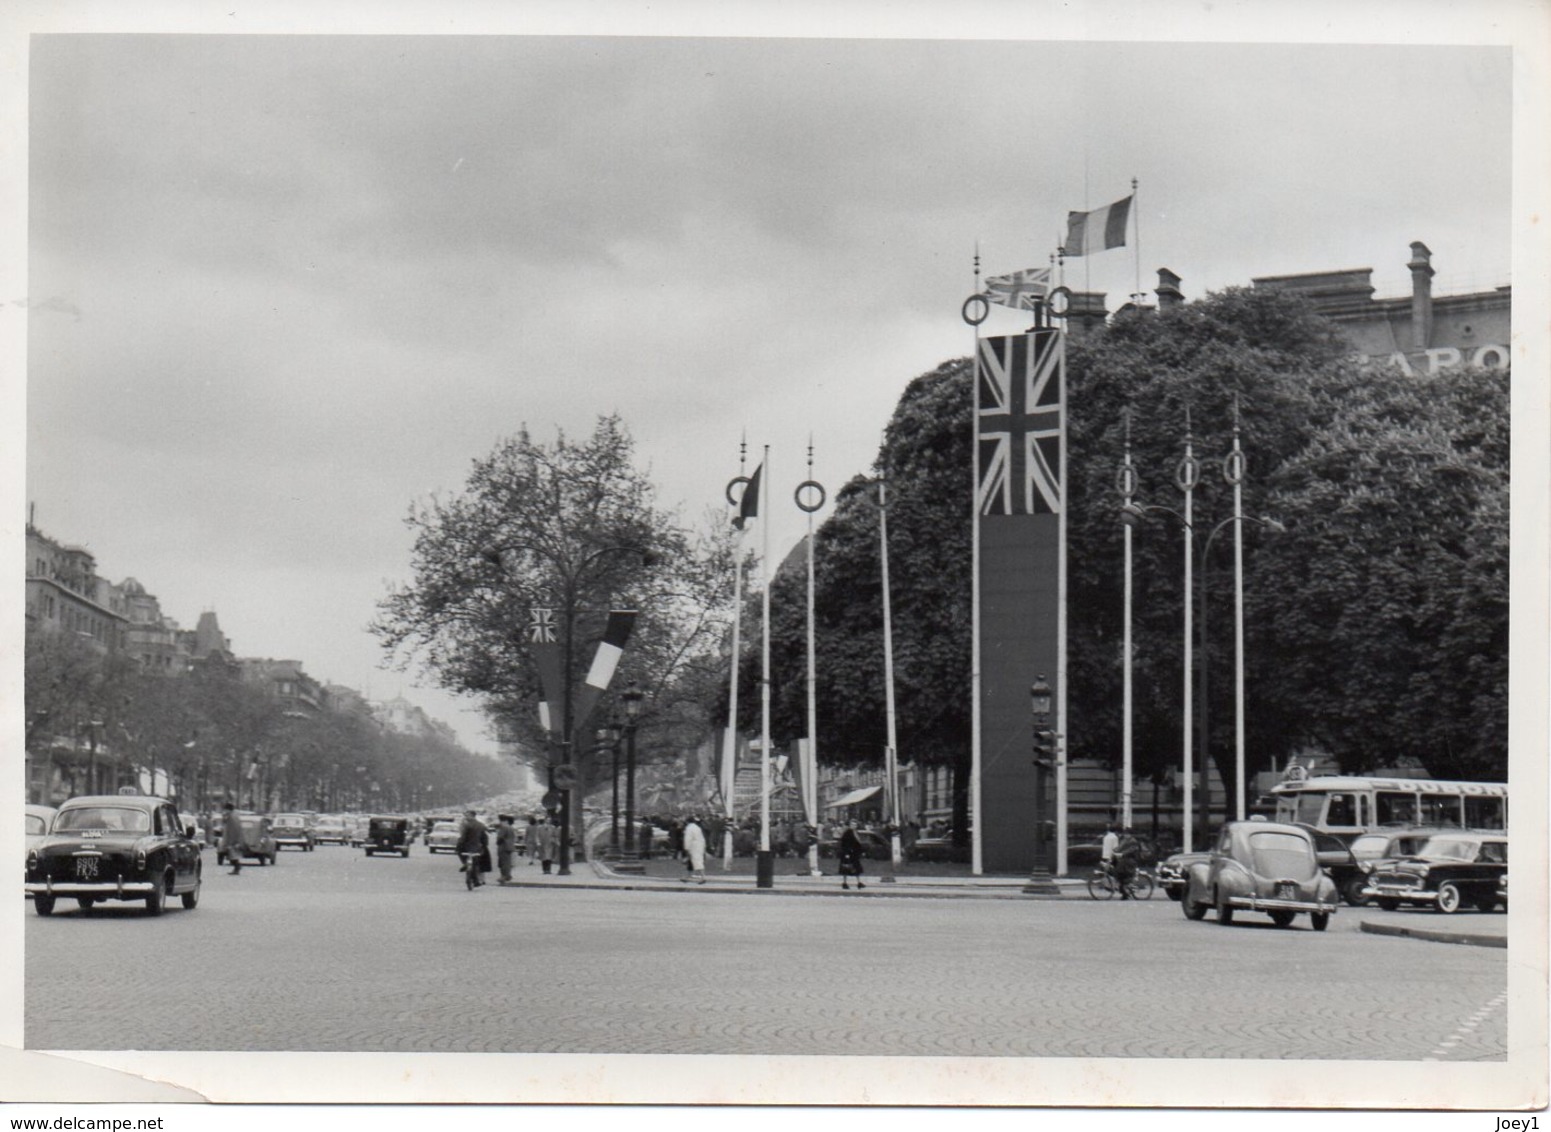 Photo Paris, Place De La Concorde, Champs élysées, Préparatif Réception D'Elisabeth 2 Visite Du 9/4/1957 - Beroemde Personen